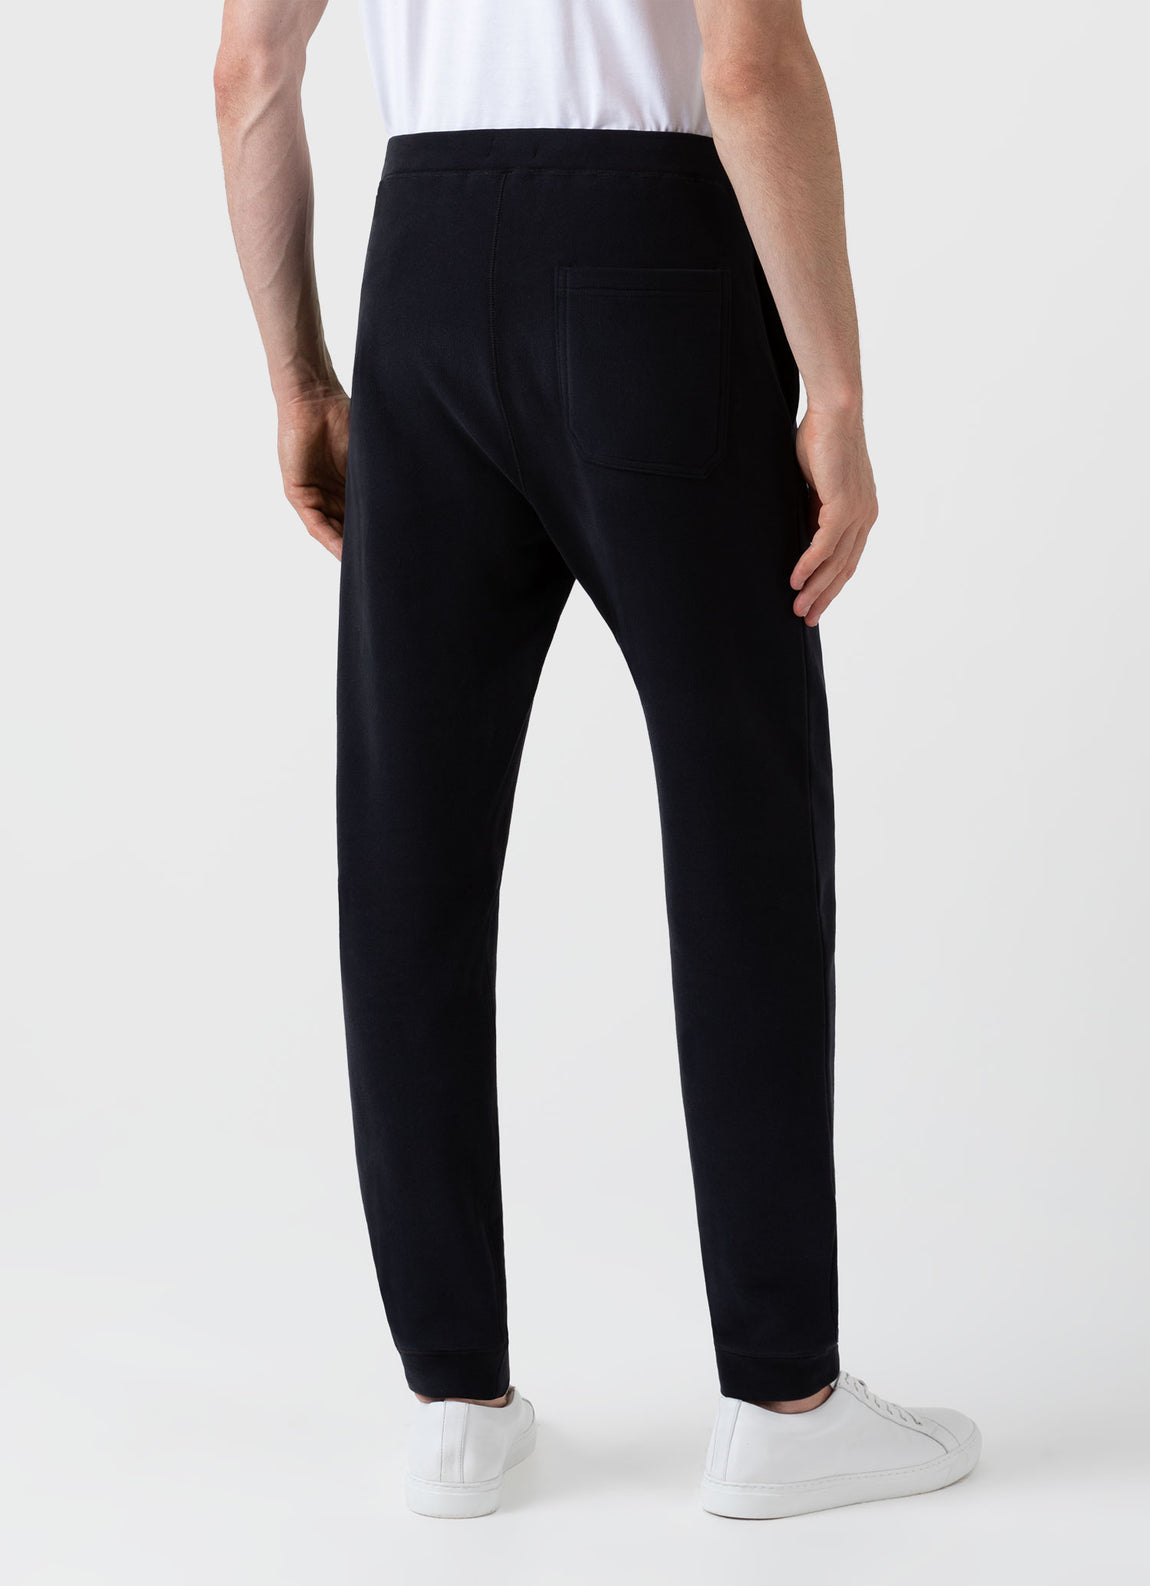 Men's Loopback Sweatpants in Black | Sunspel